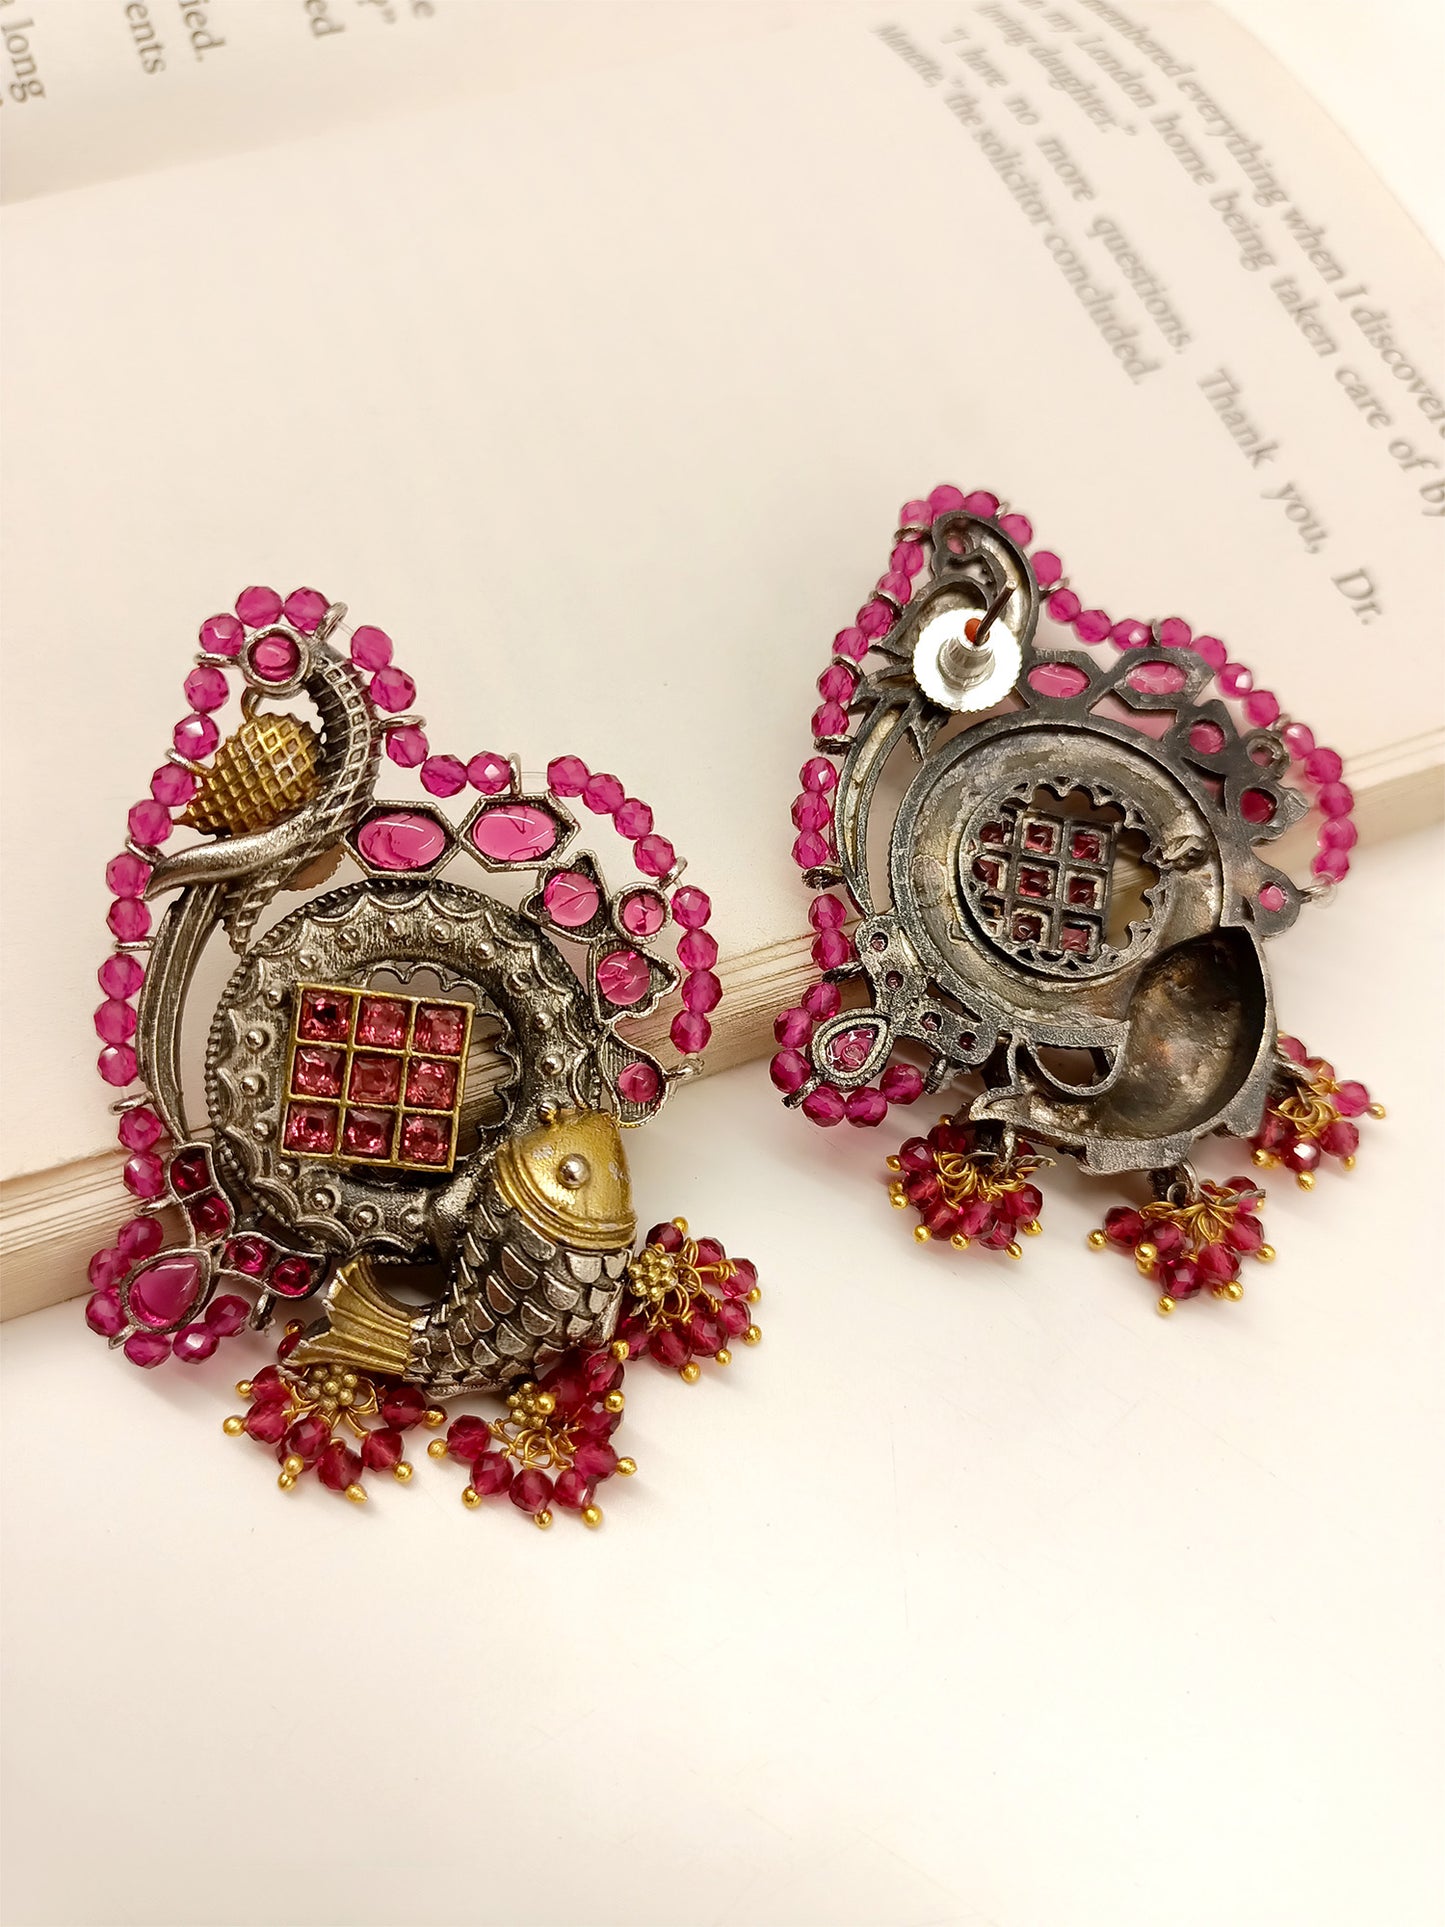 Aakriti Rose Pink Oxidized Earrings